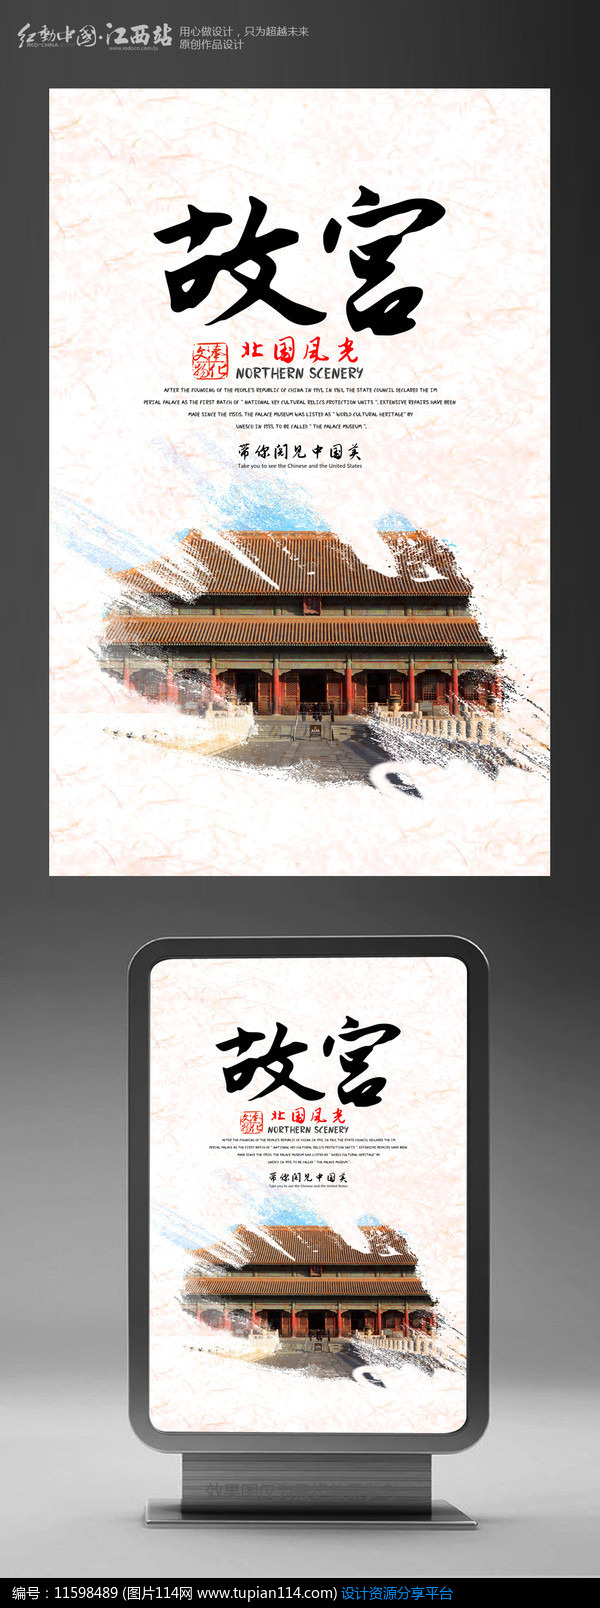 [原创] 北京故宫旅游宣传海报